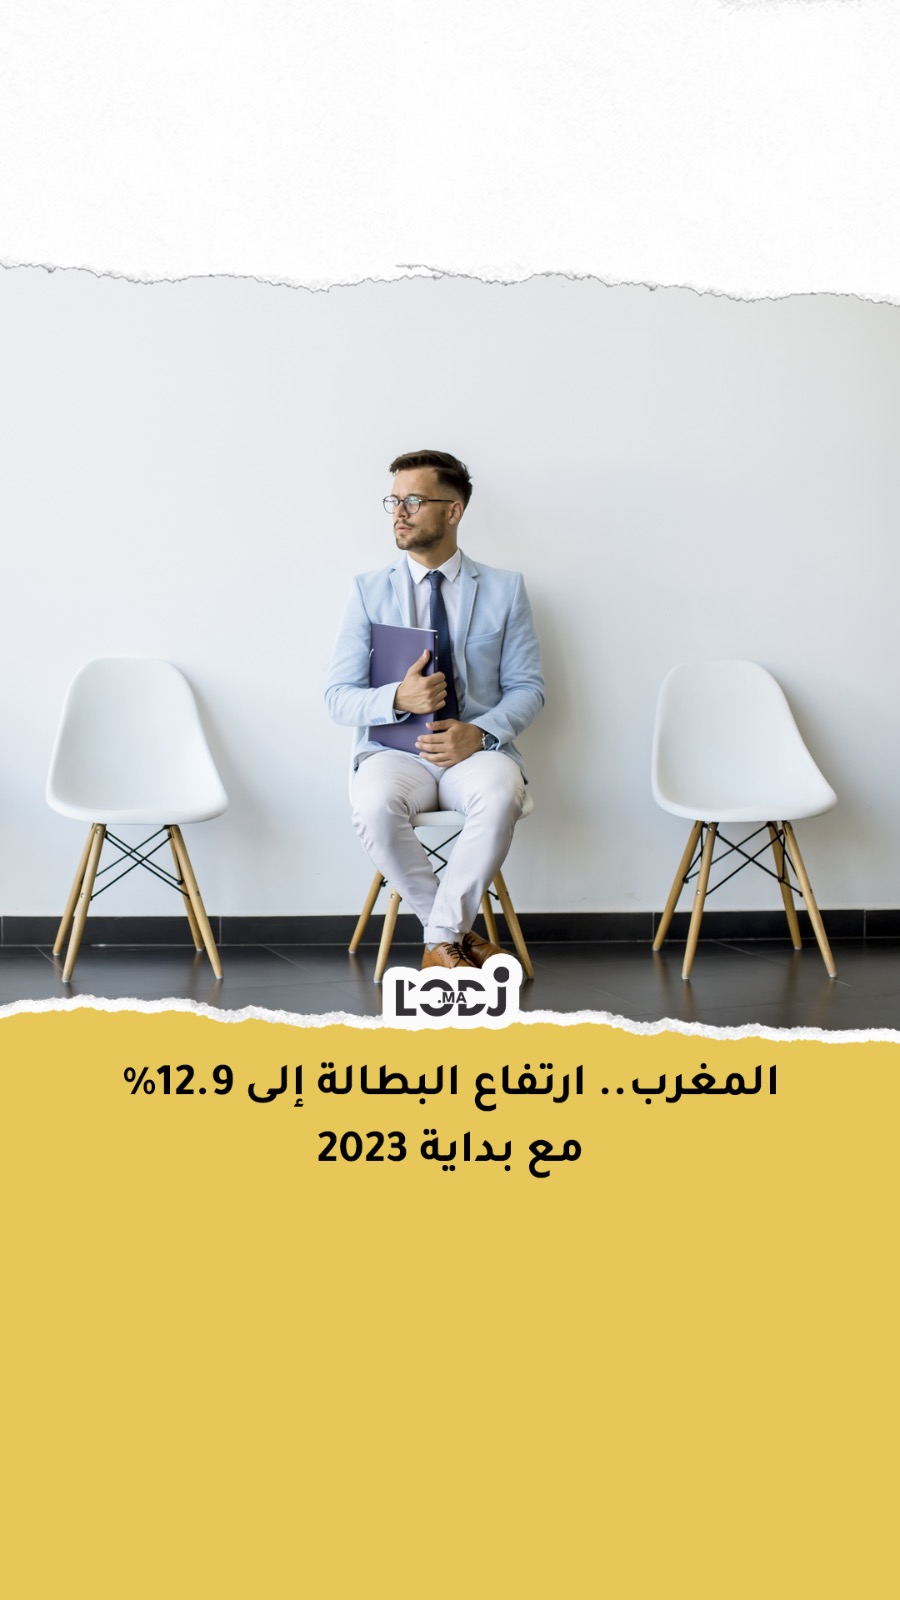 المغرب: ارتفاع البطالة إلى 12.9% مع بداية 2023